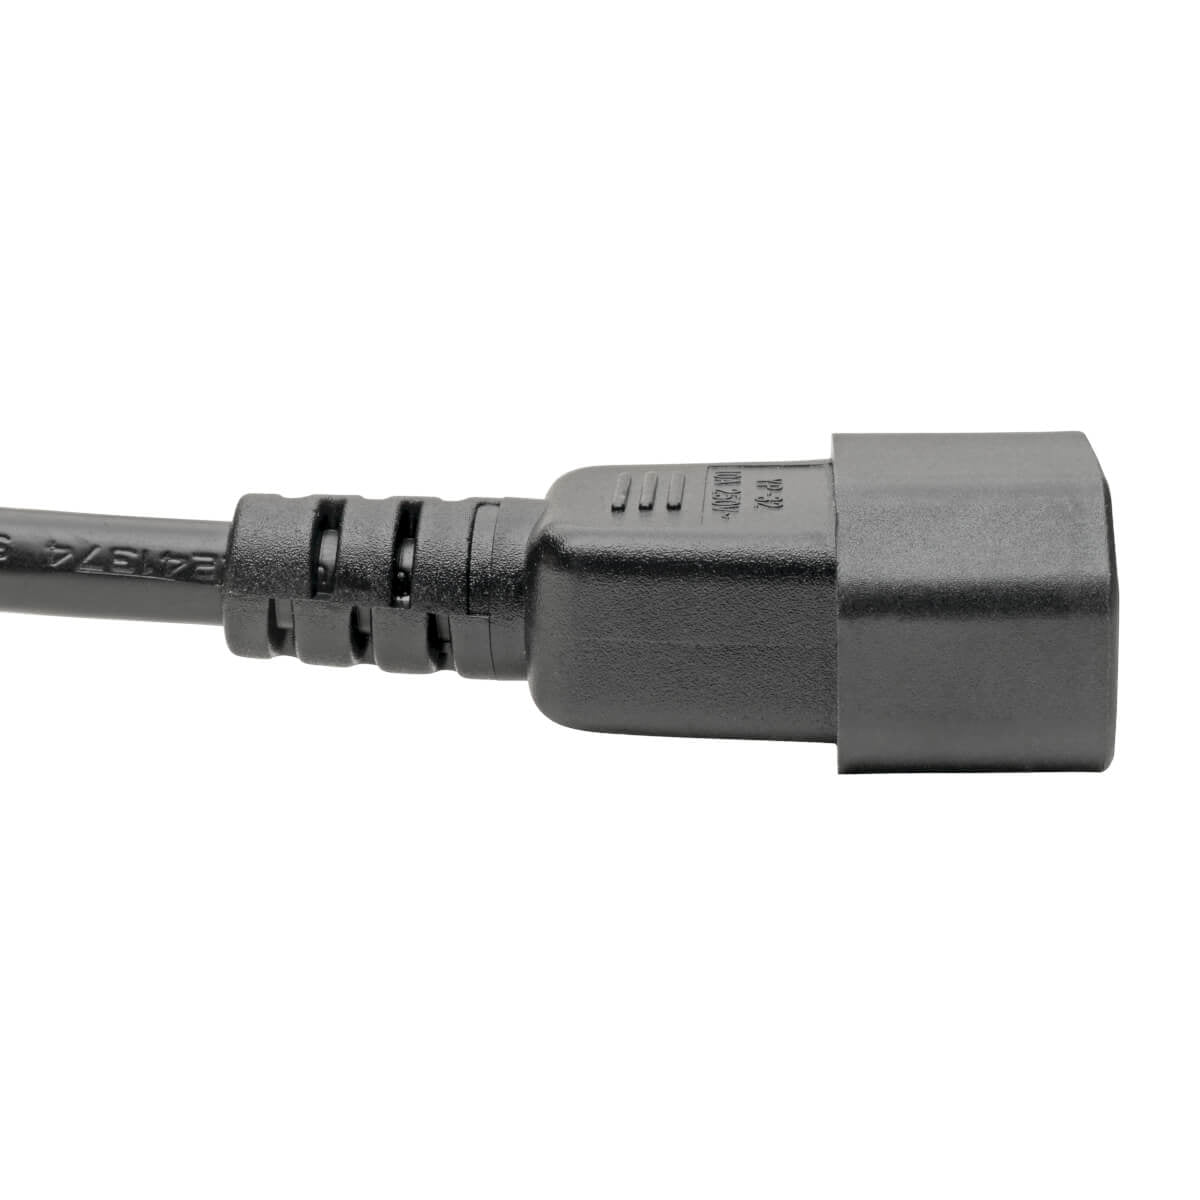 Cable Adaptador De Alimentación Para Laptop Tripp-Lite P014-006 C14 C5 2.5A 250V 18 Awg 1.83 M [6 Pies] Negro